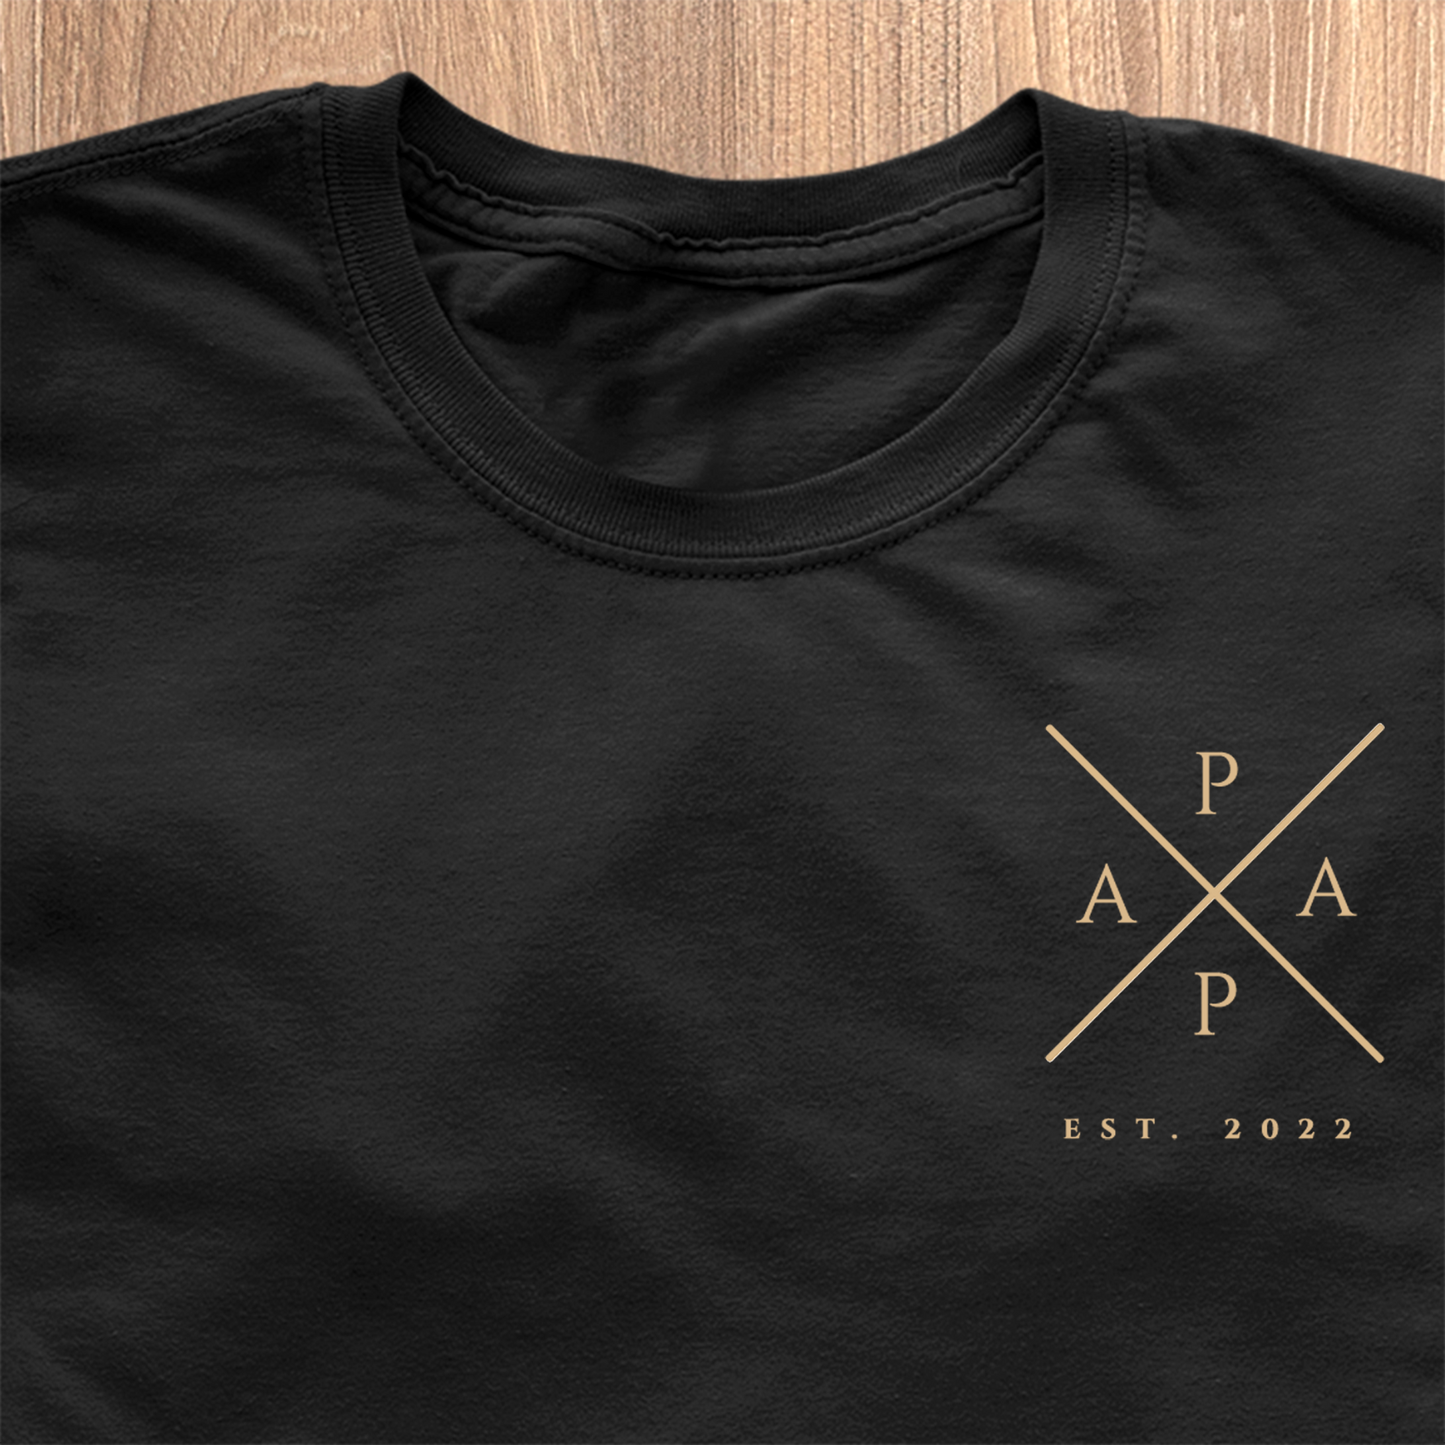 Papa Cross T-Shirt - Datoen kan tilpasses